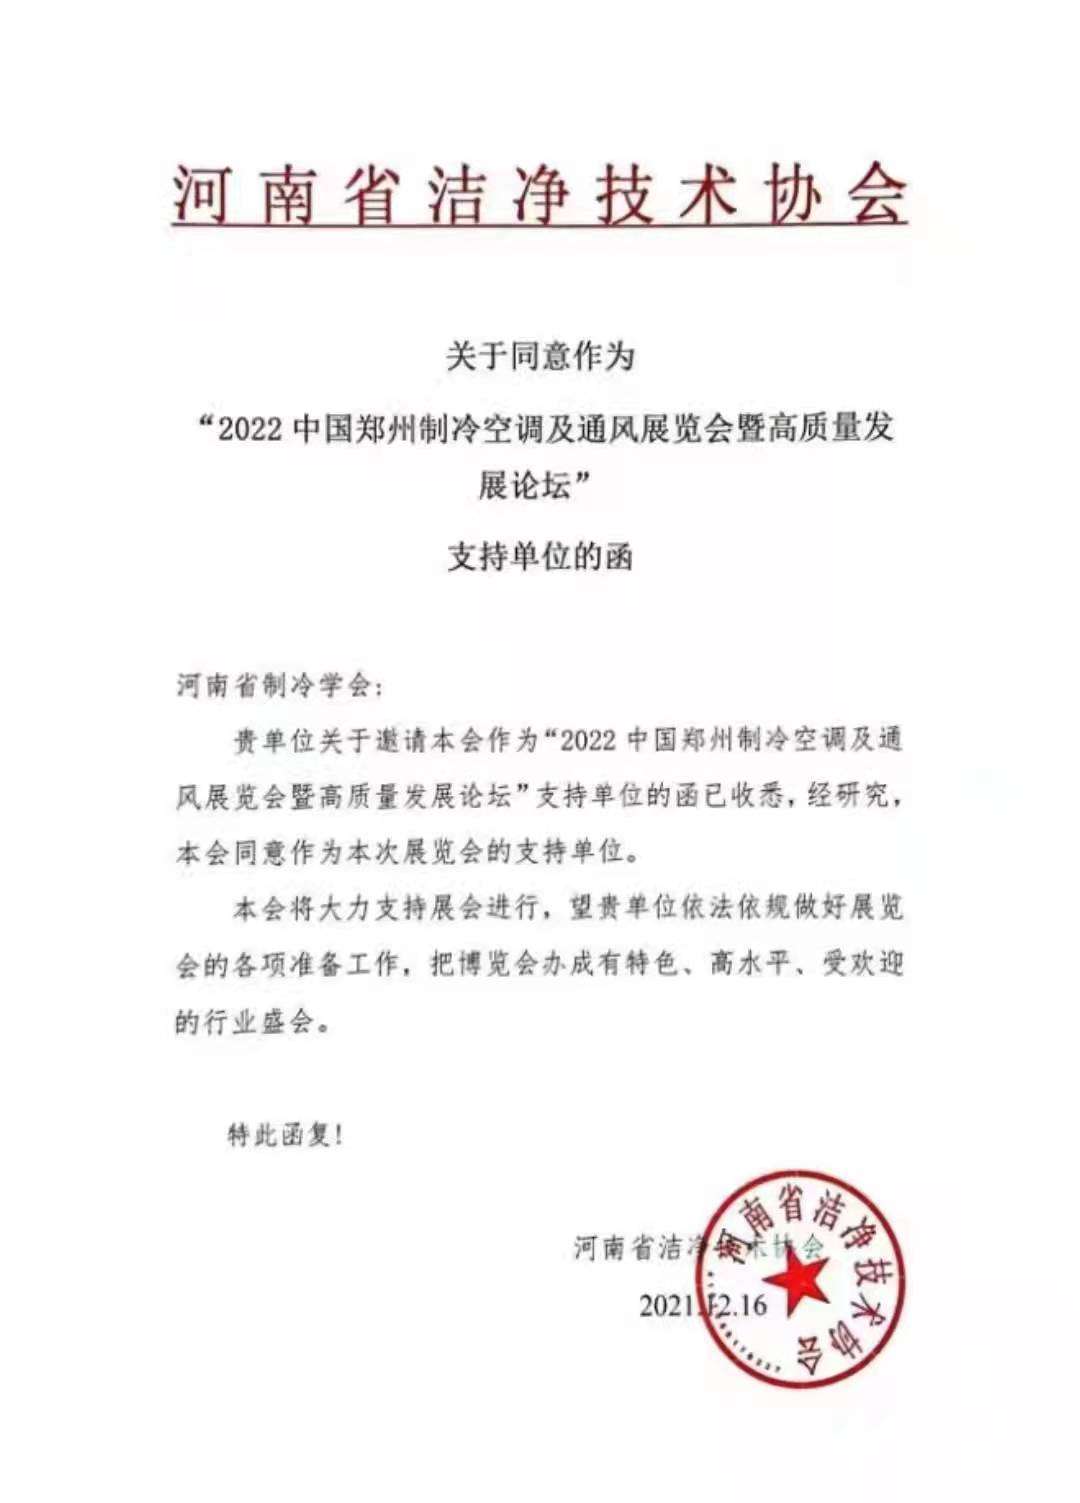 感谢河南省洁净技术协会对2022郑州制冷展的大力支持